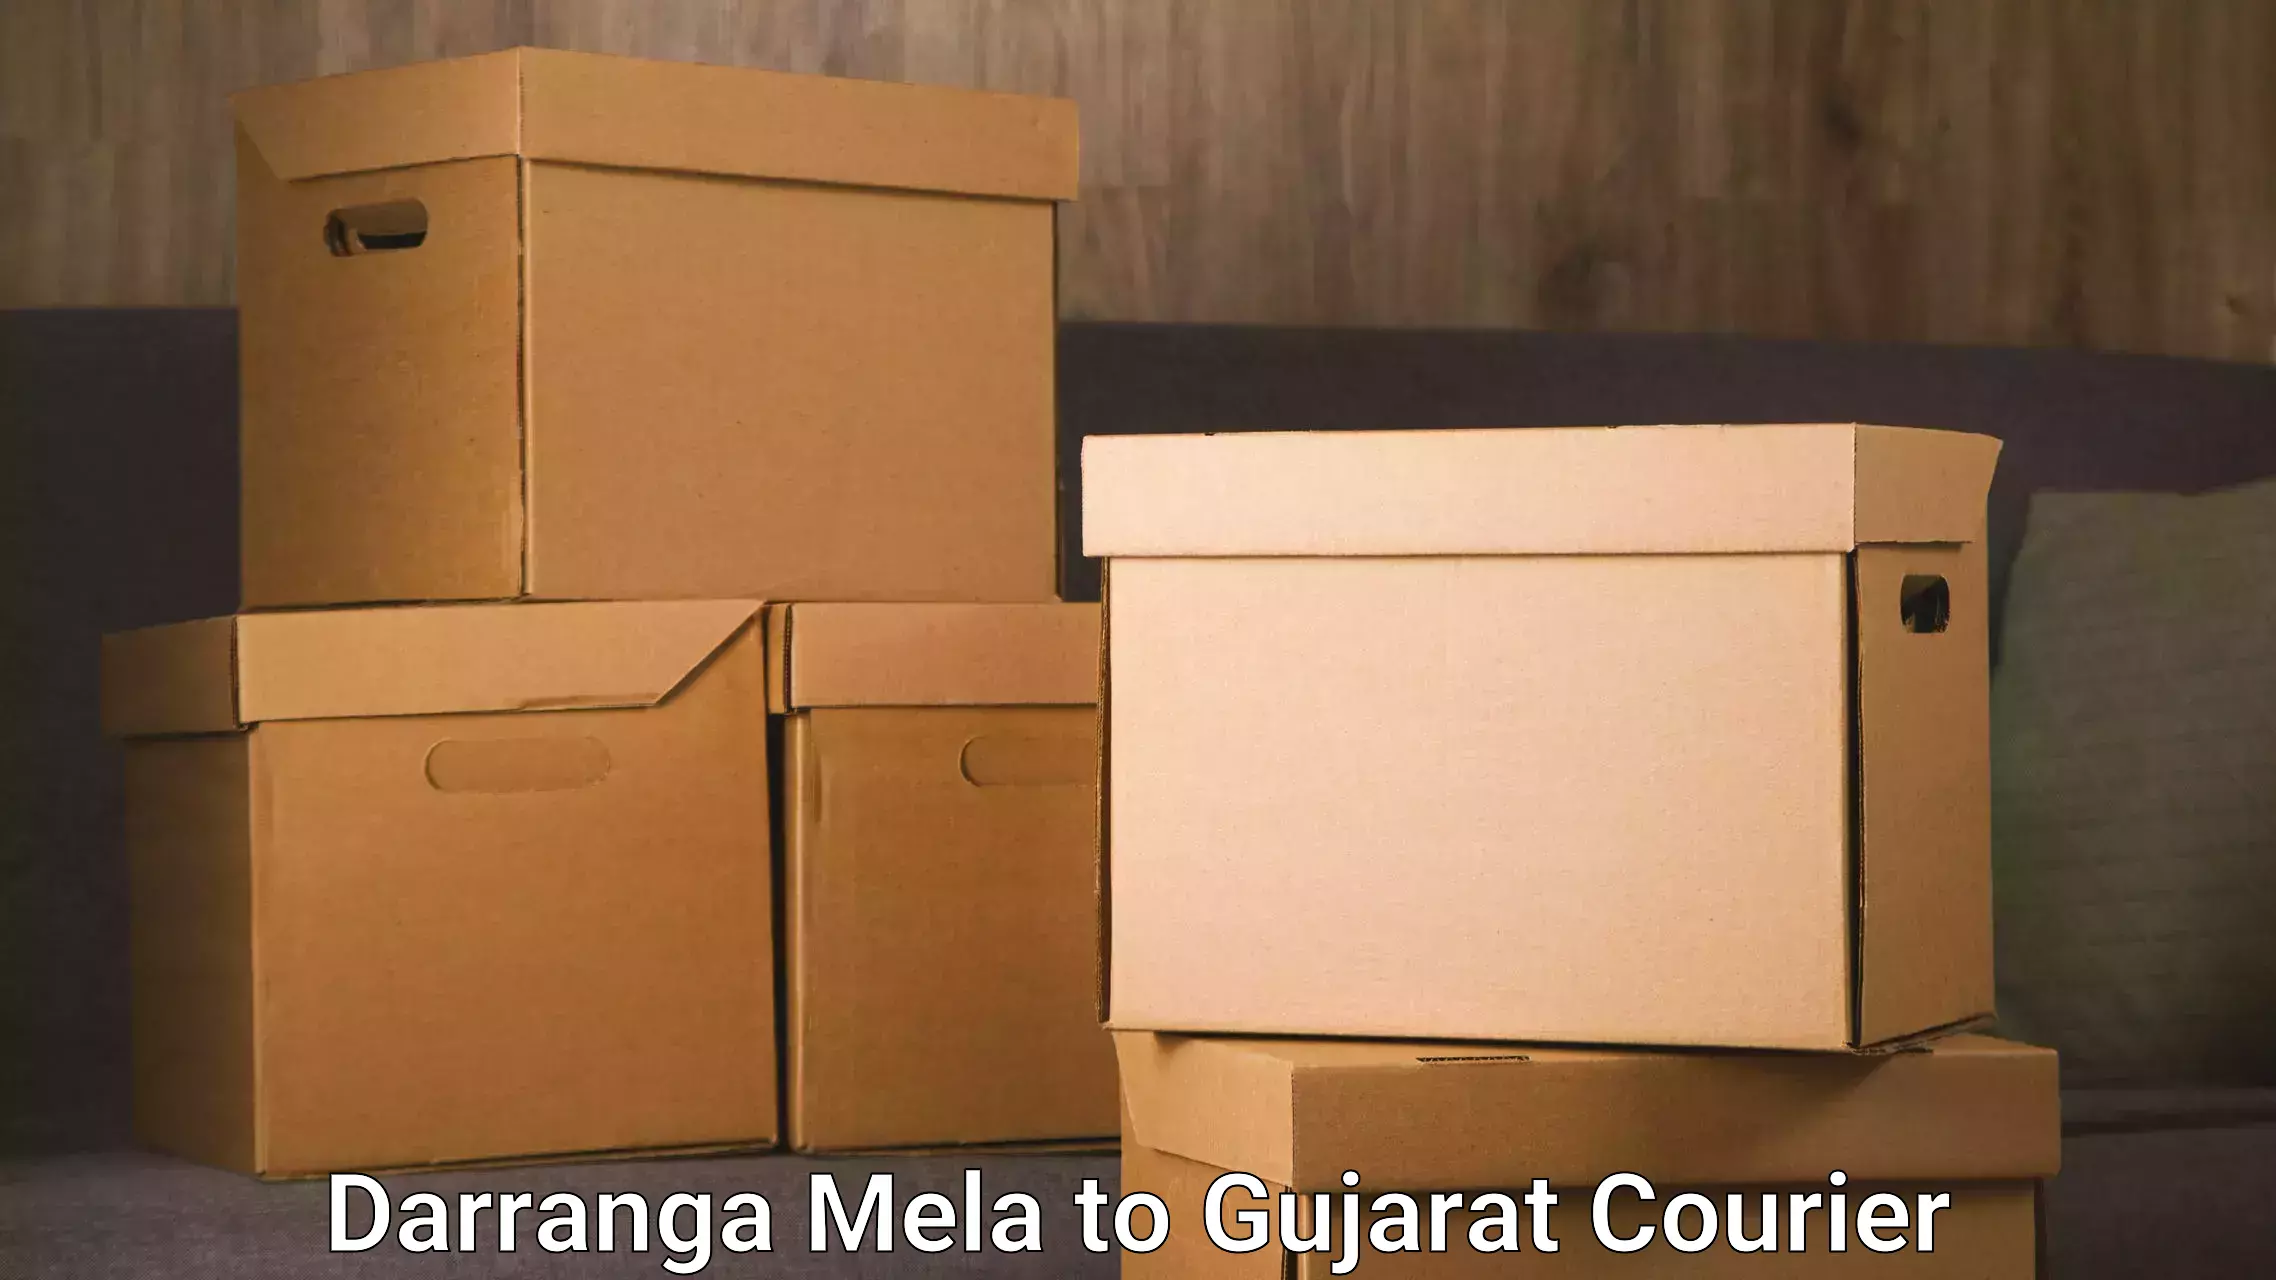 Corporate courier solutions Darranga Mela to Tapi